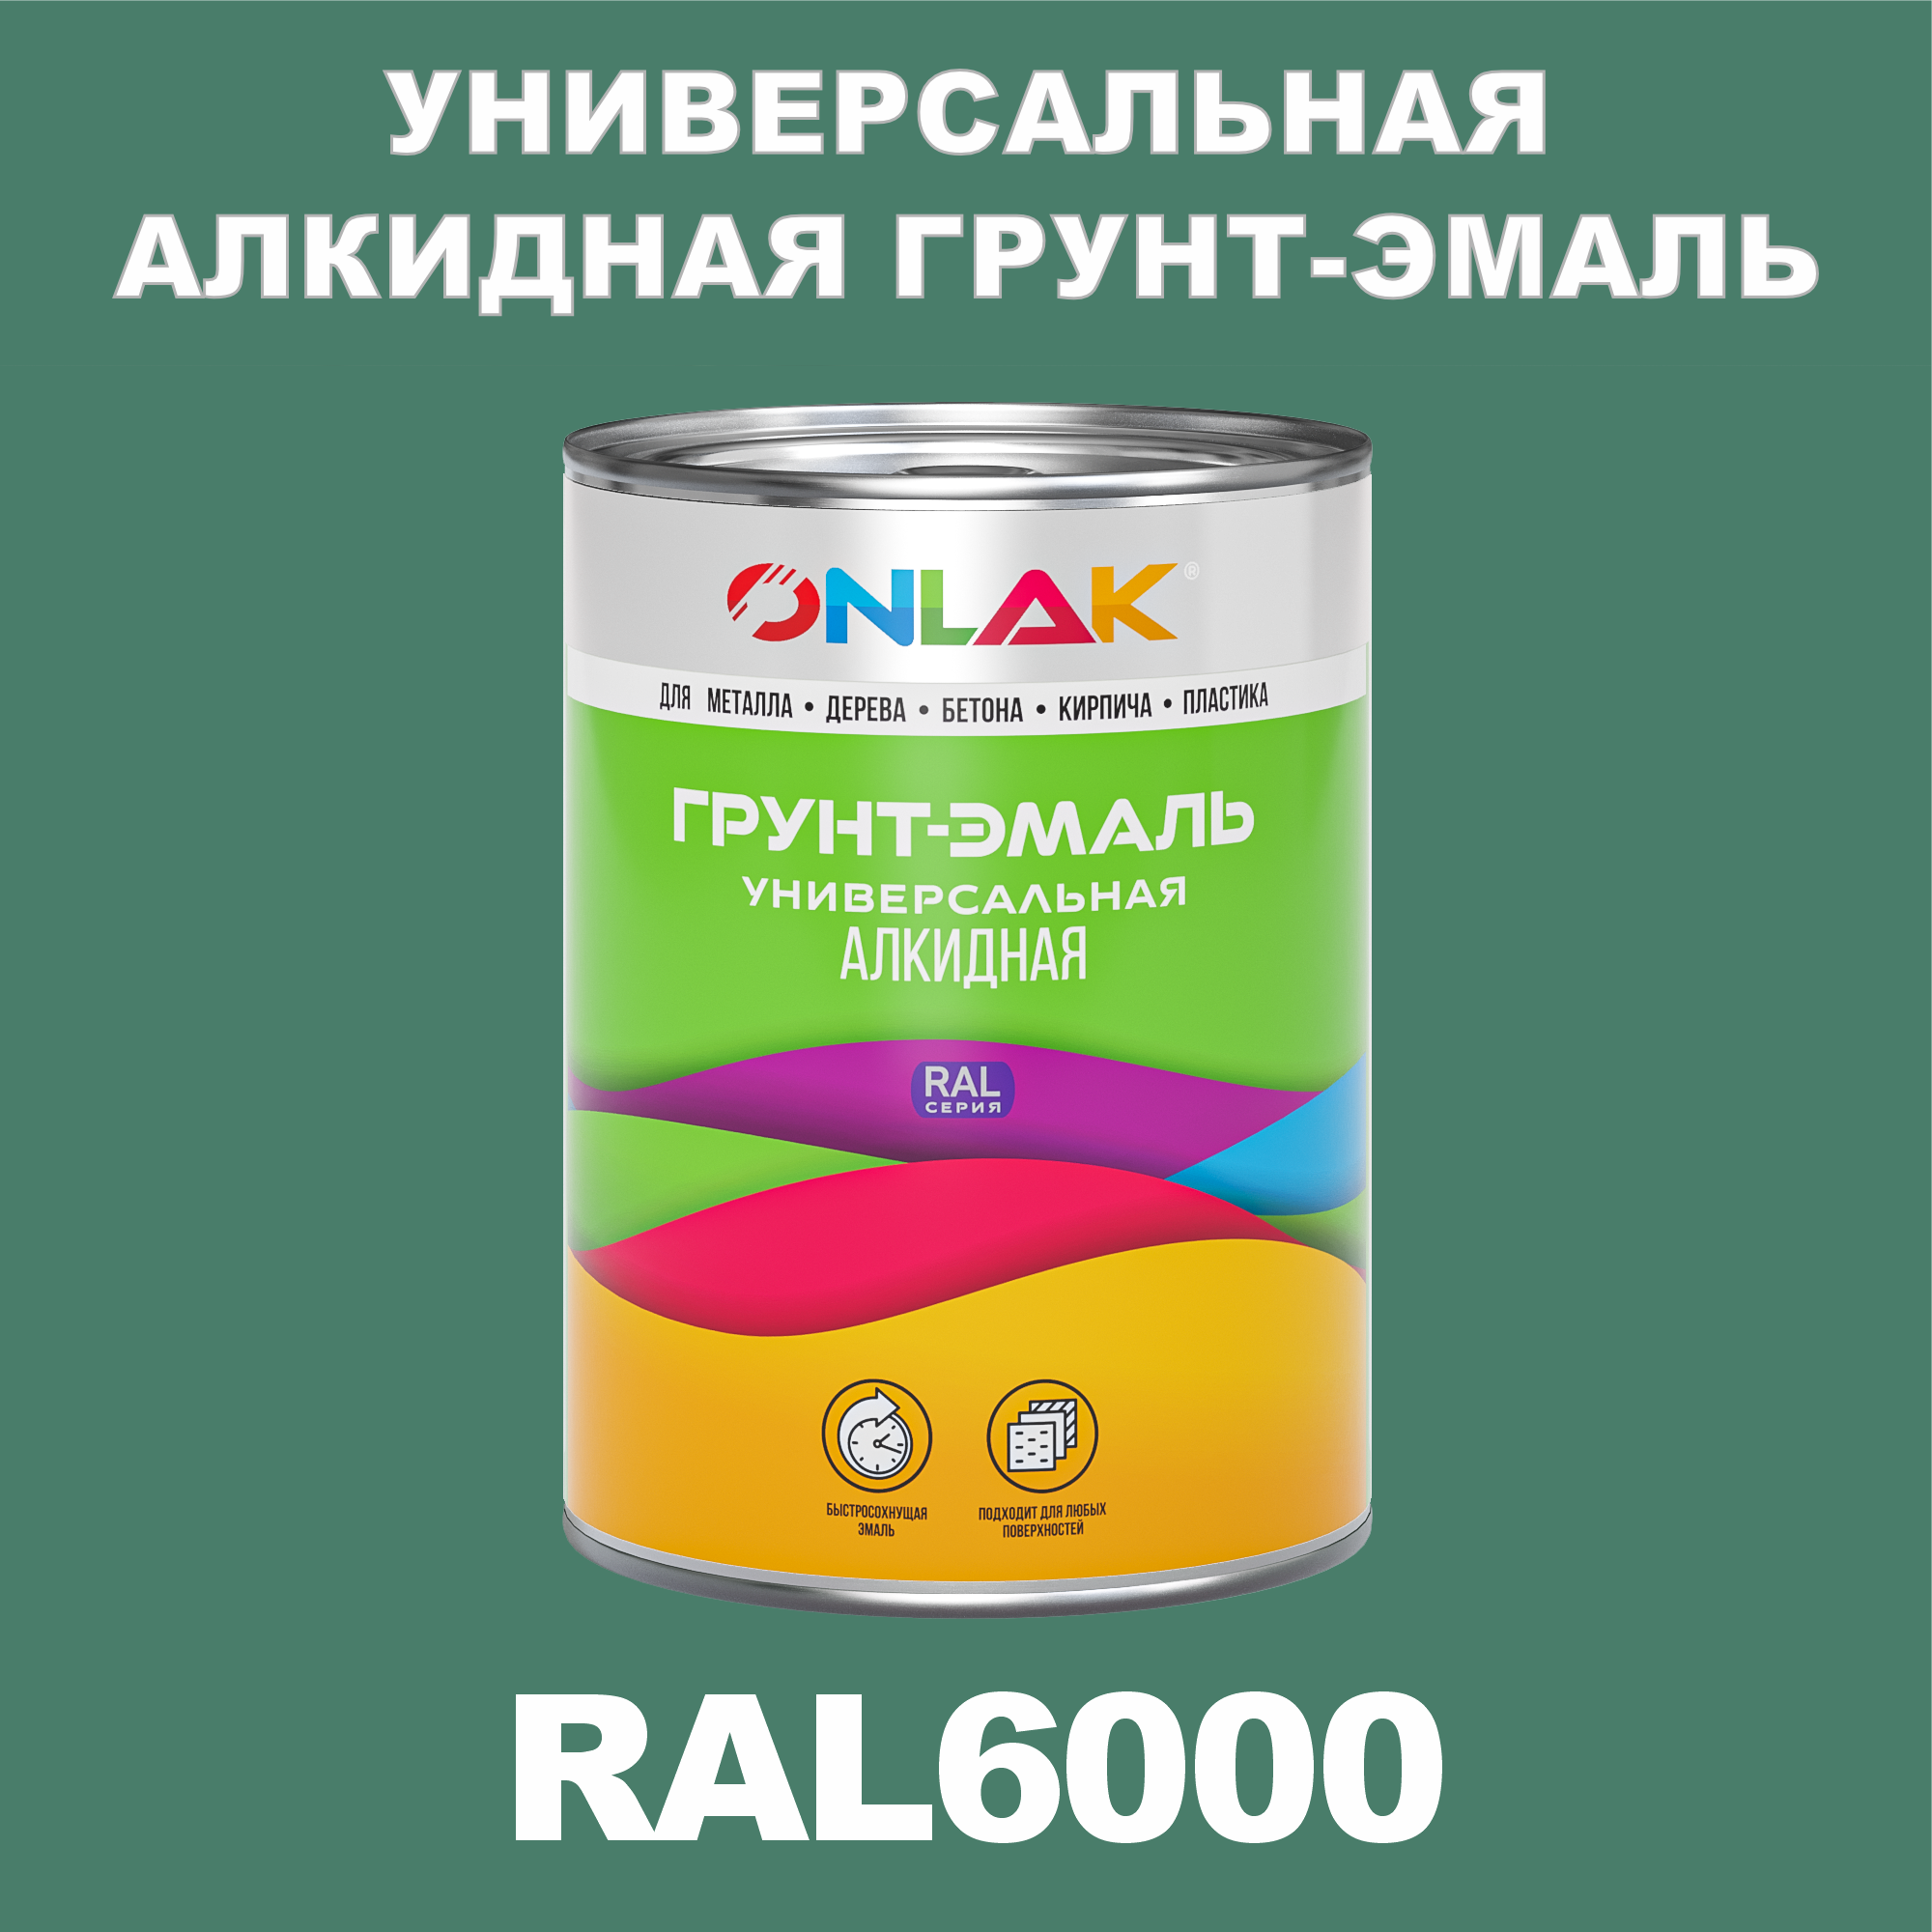 Грунт-эмаль ONLAK 1К RAL6000 антикоррозионная алкидная по металлу по ржавчине 1 кг грунт эмаль yollo по ржавчине алкидная белая 0 9 кг